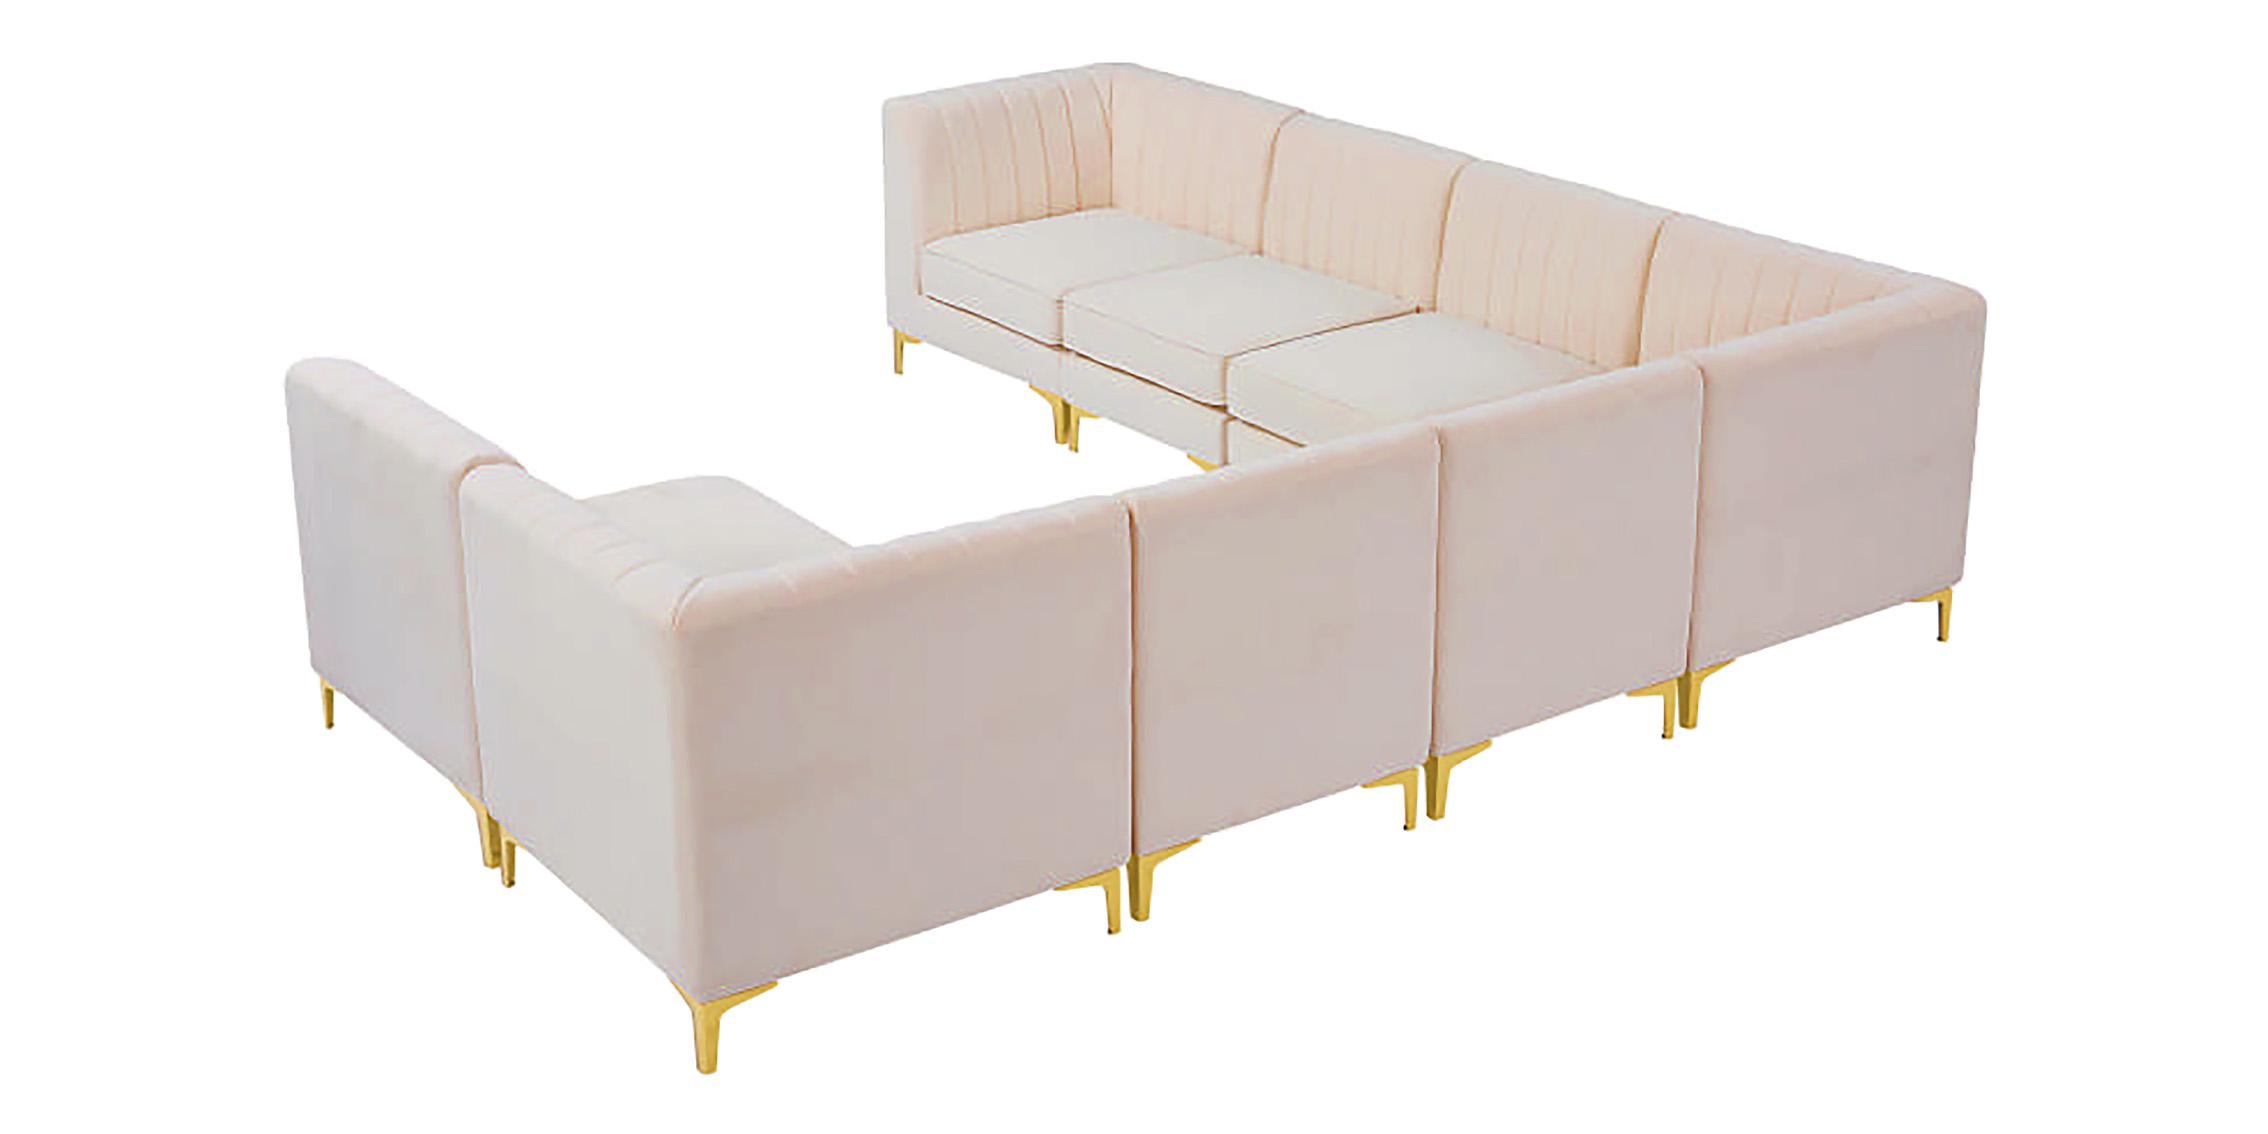 

    
604Pink-Sec8A Meridian Furniture Modular Sectional Sofa
